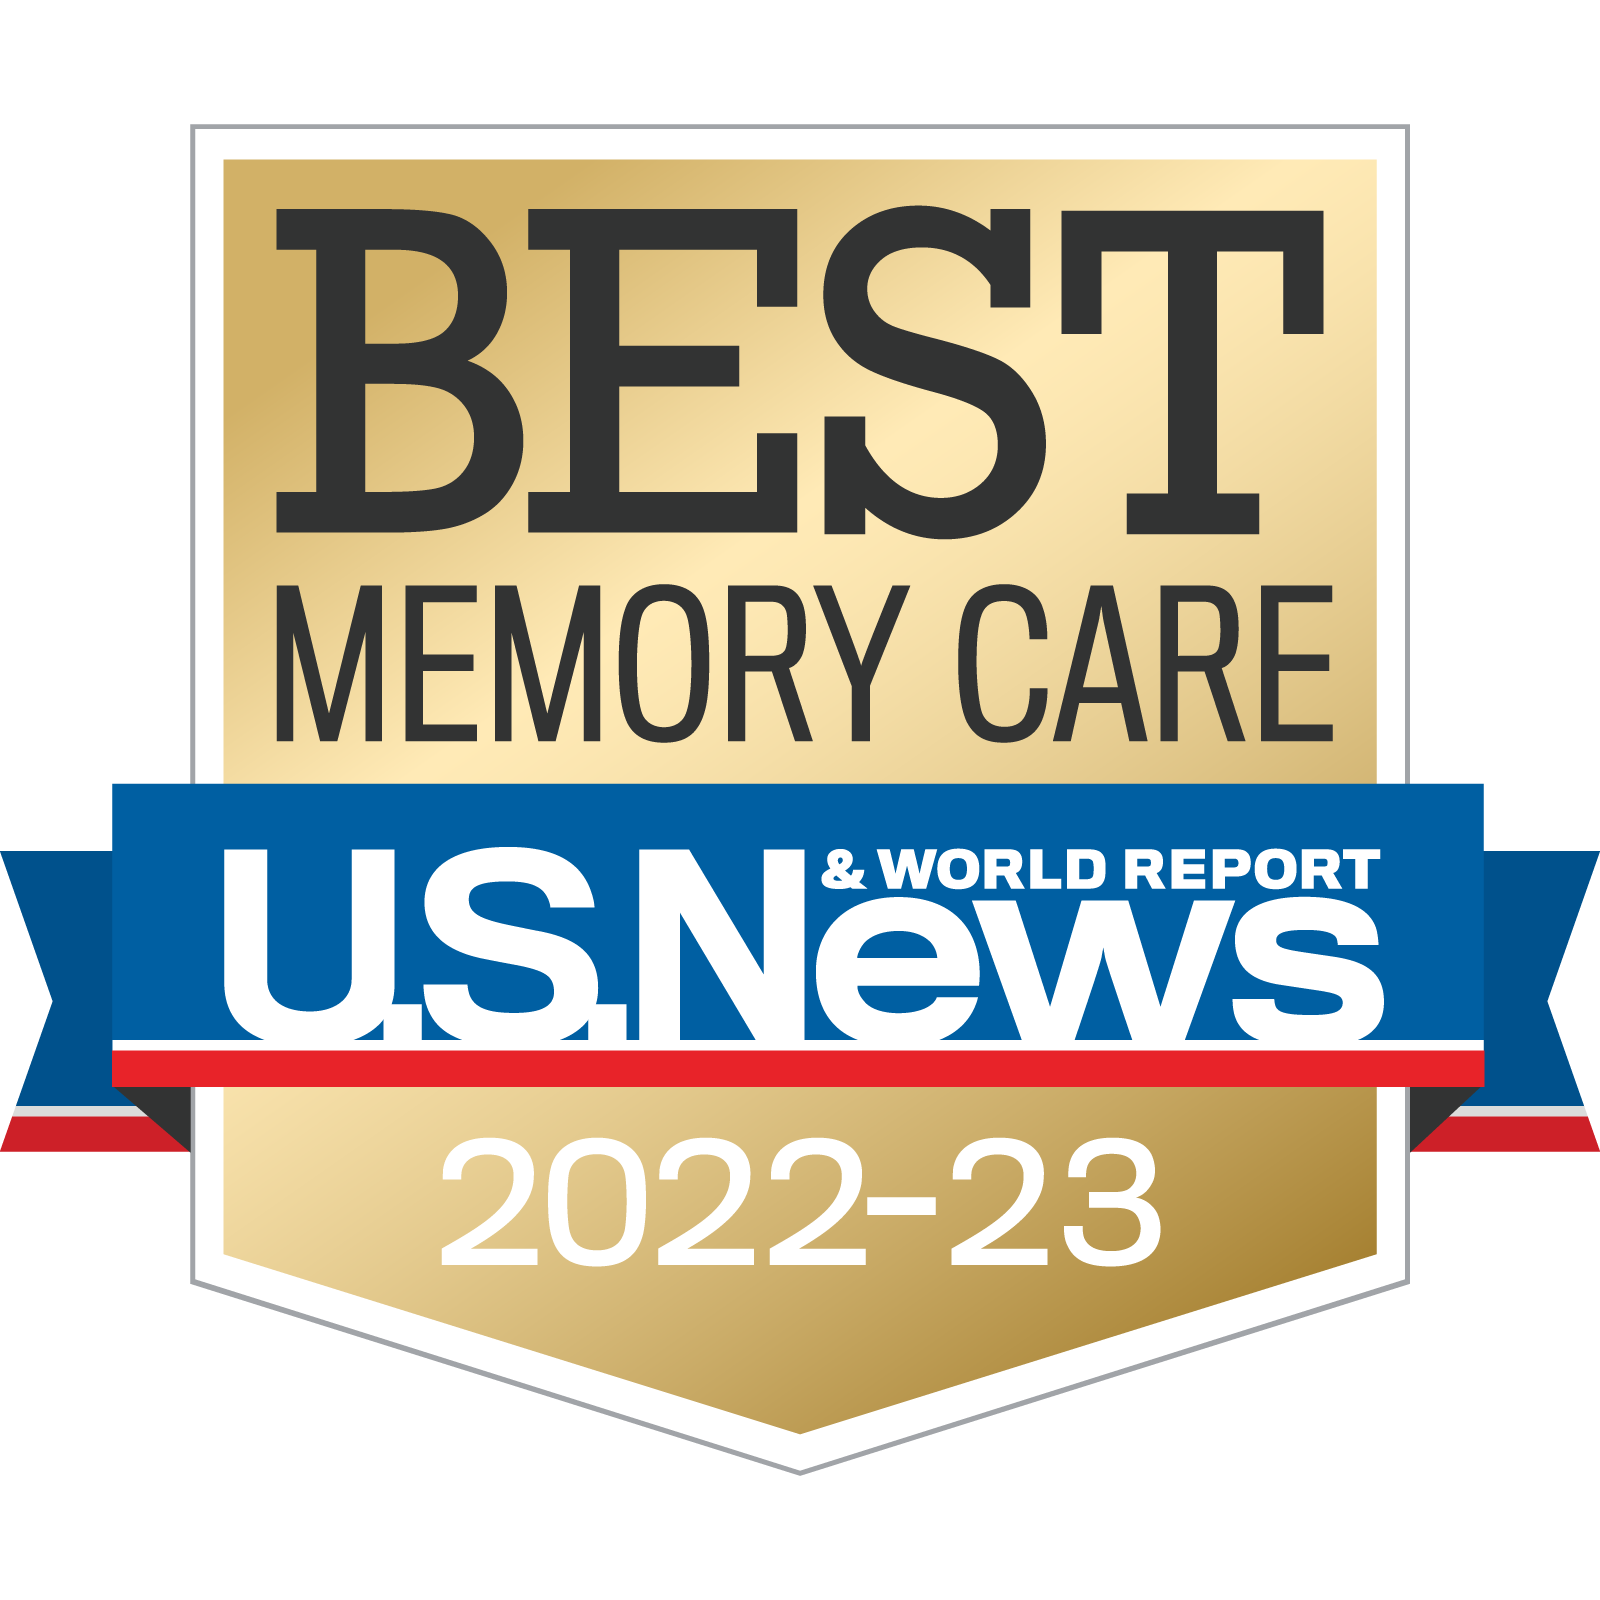 The KentRidge Senior Living named US News Best Memory Care